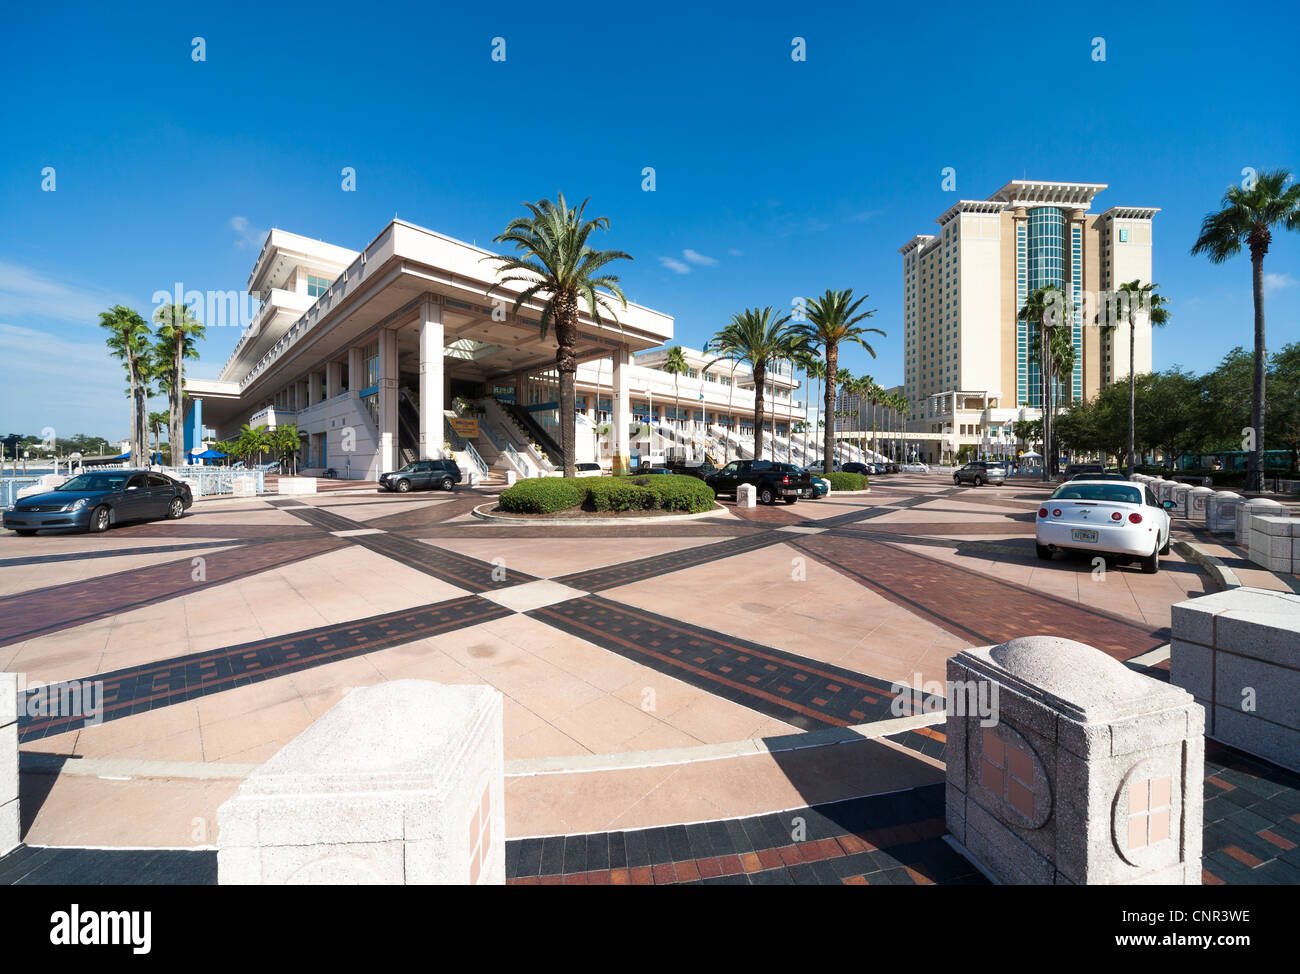 Città di Tampa Florida, Tampa Convention Center esterno dell'edificio con ingresso principale.Tampa Bay Area, Fl US STATI UNITI D'AMERICA Foto Stock